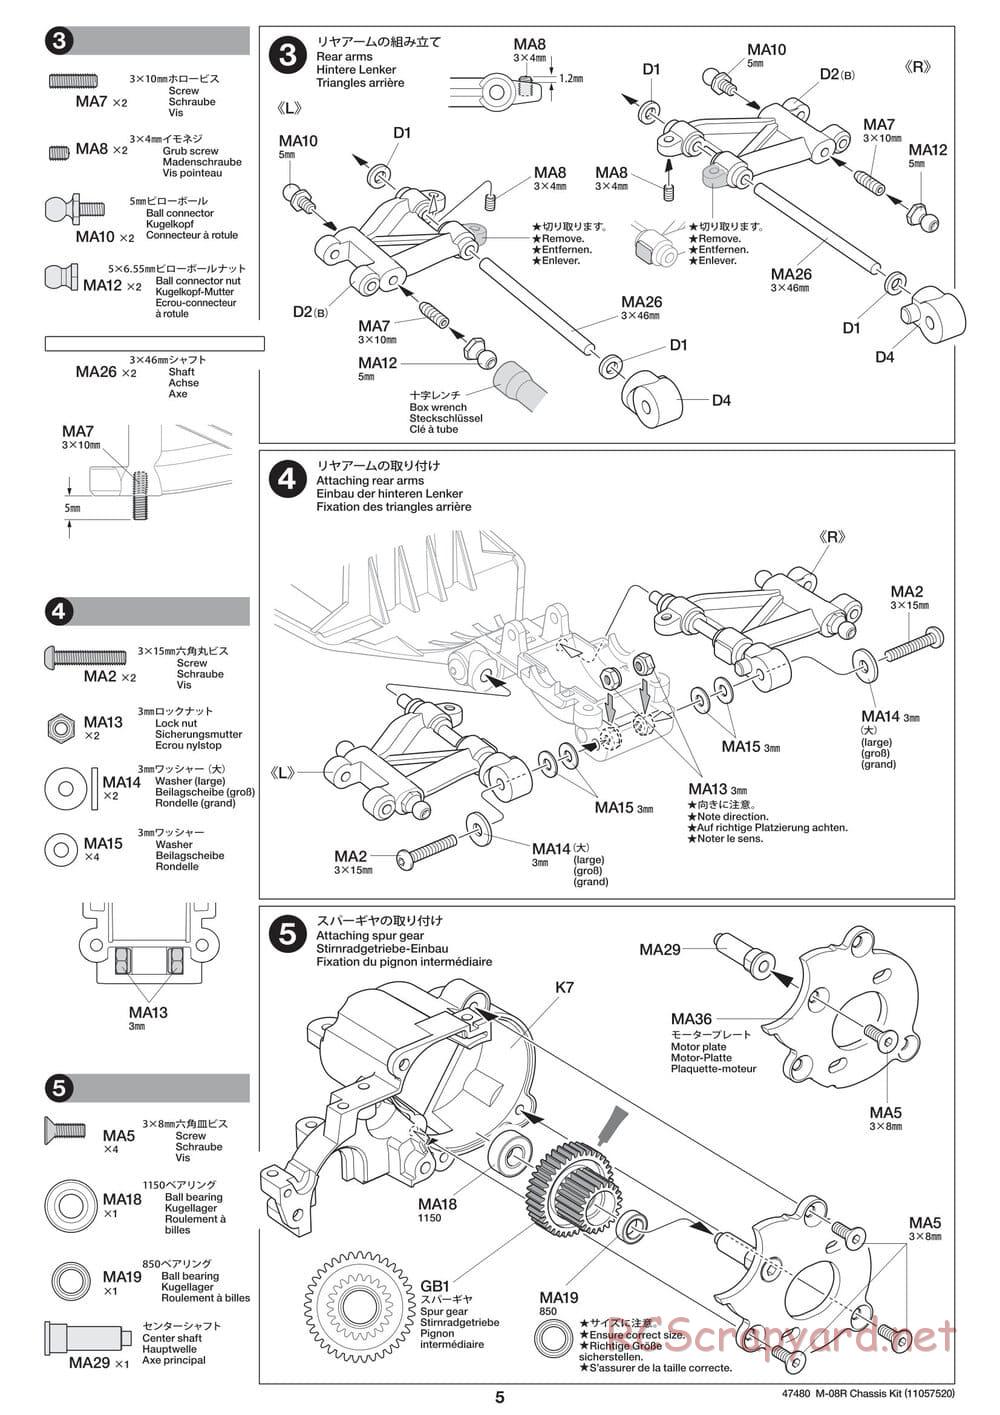 Tamiya - M-08R Chassis - Manual - Page 5